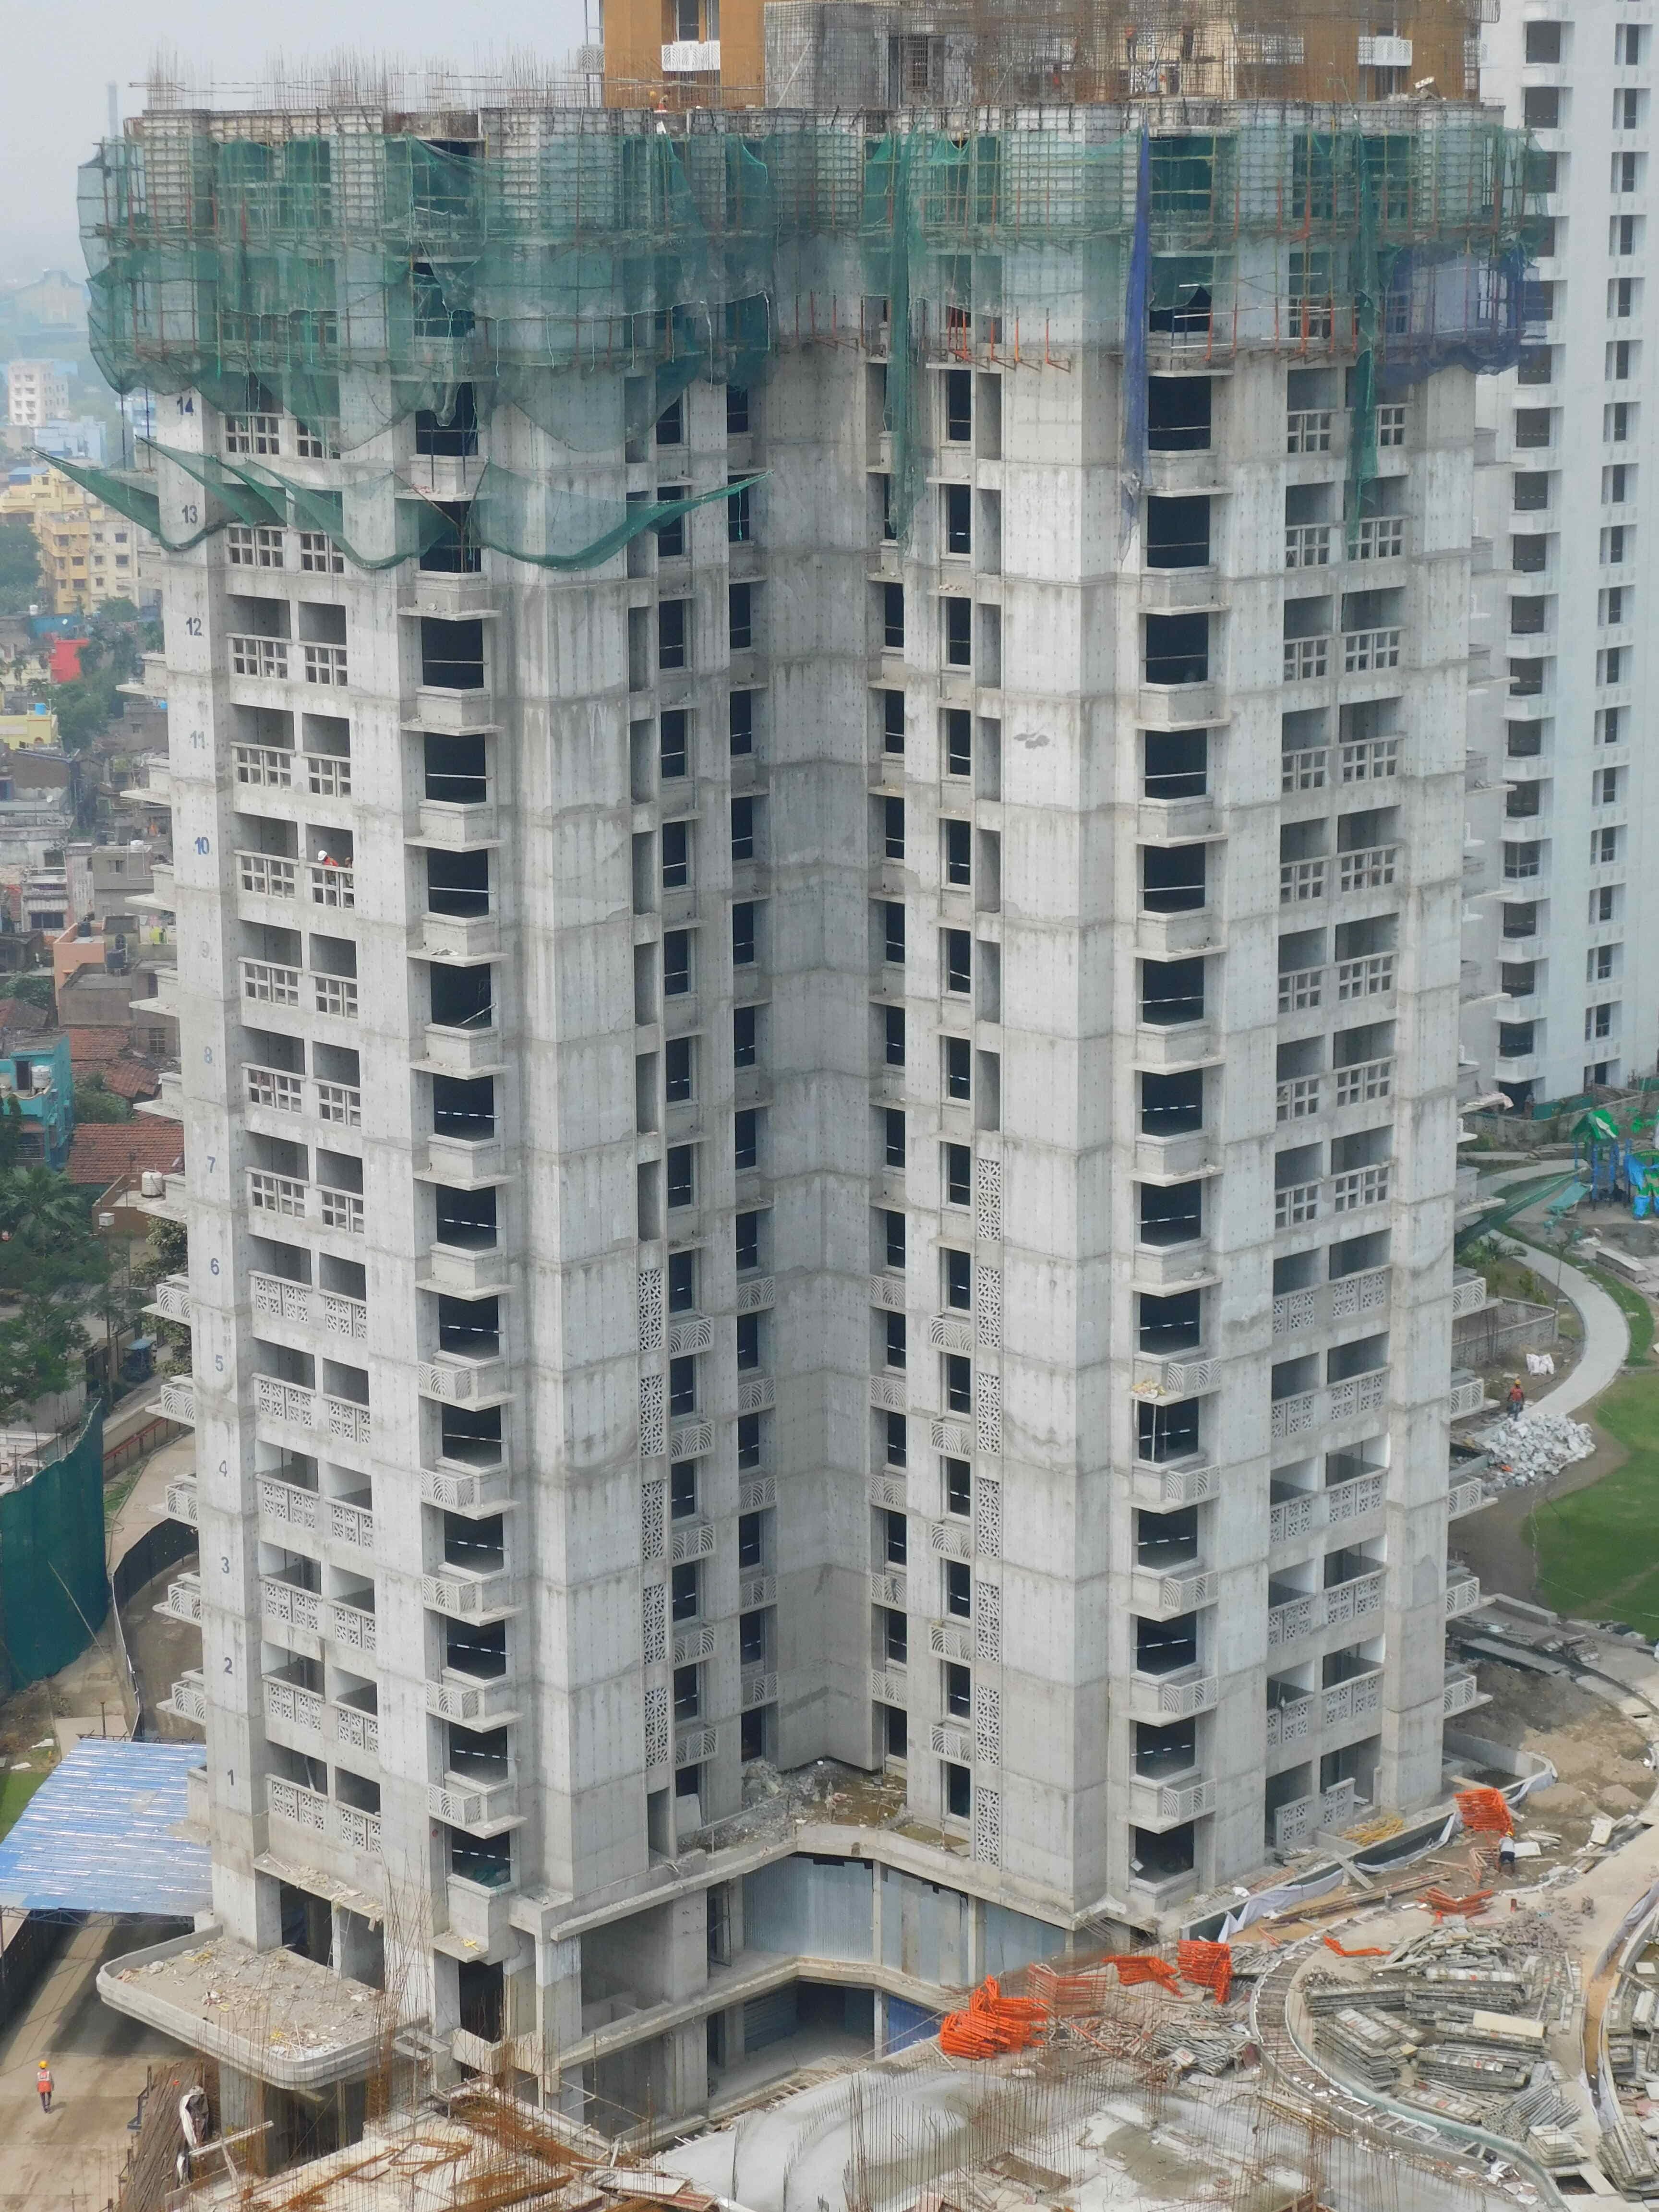 16th Floor Roof Casting Work in Progress